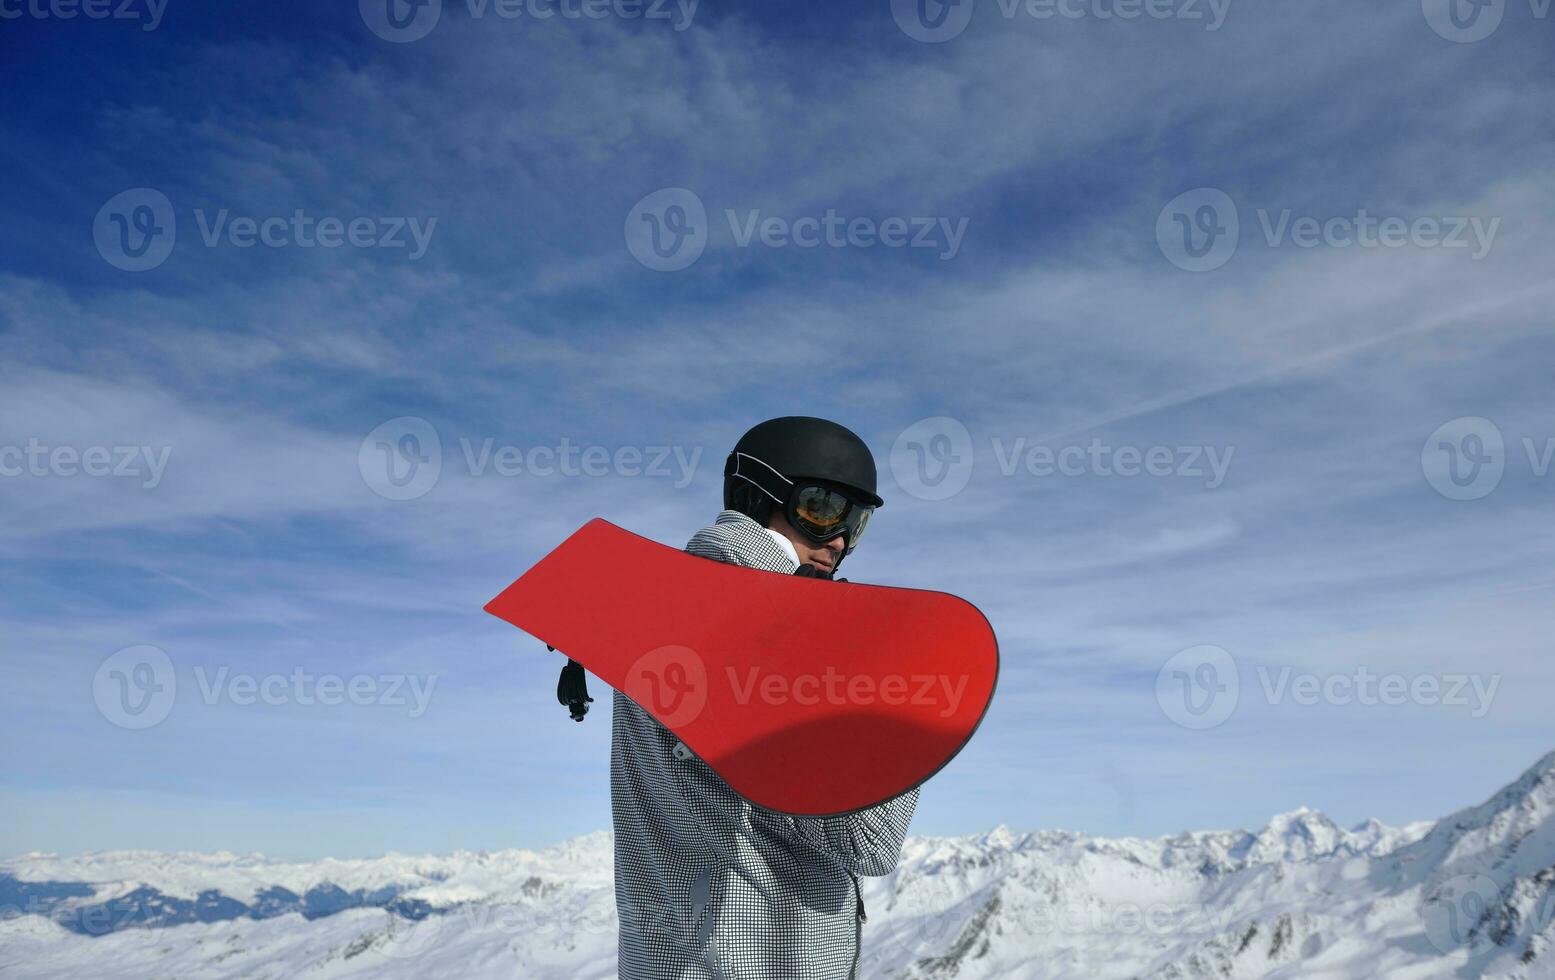 homem inverno neve esqui foto